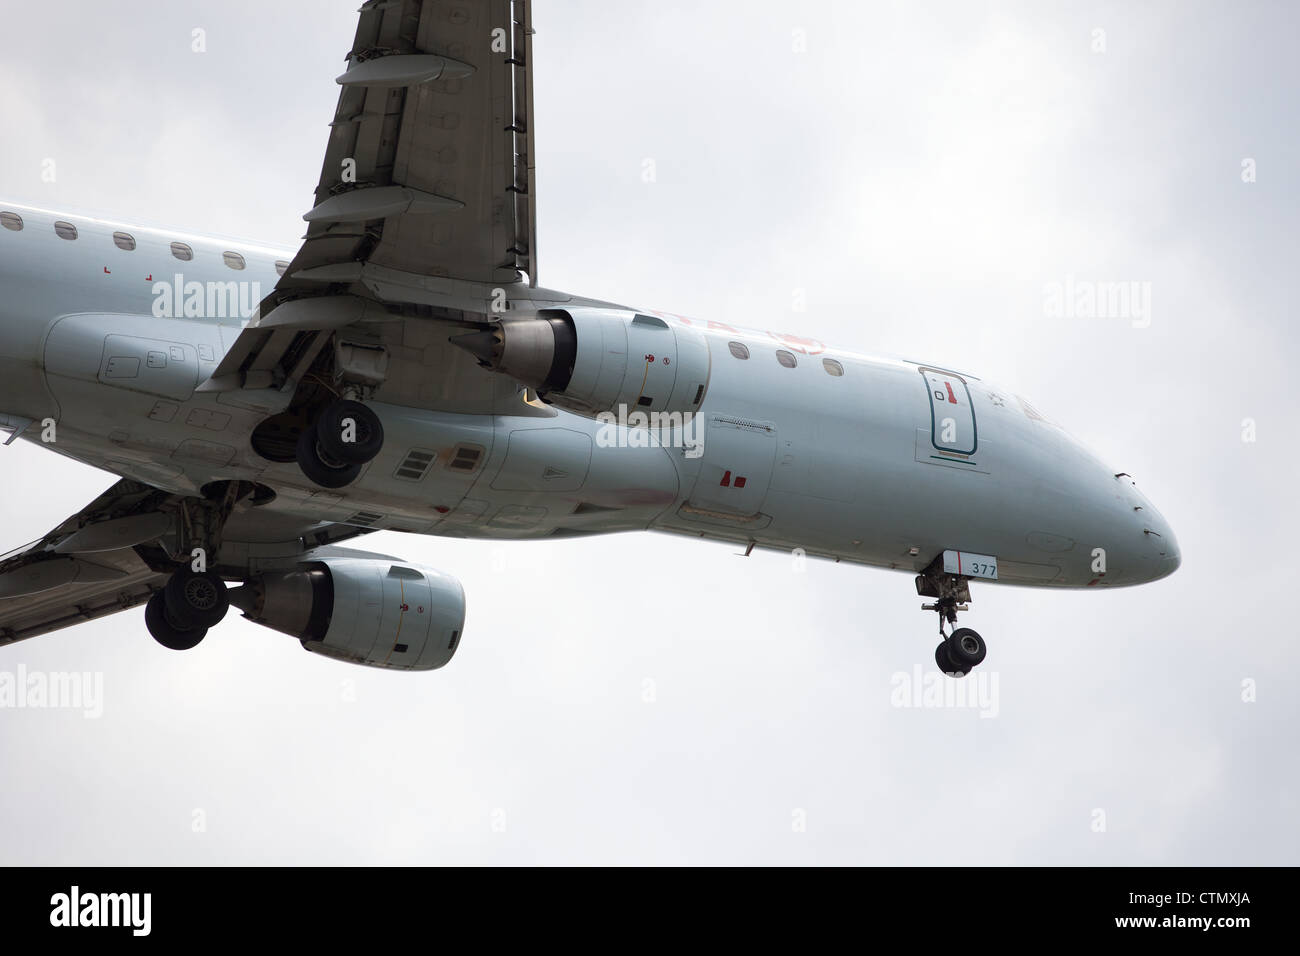 Air Canada Embraer 175 aterrizando en el Aeropuerto Pearson de Toronto, Canadá Foto de stock